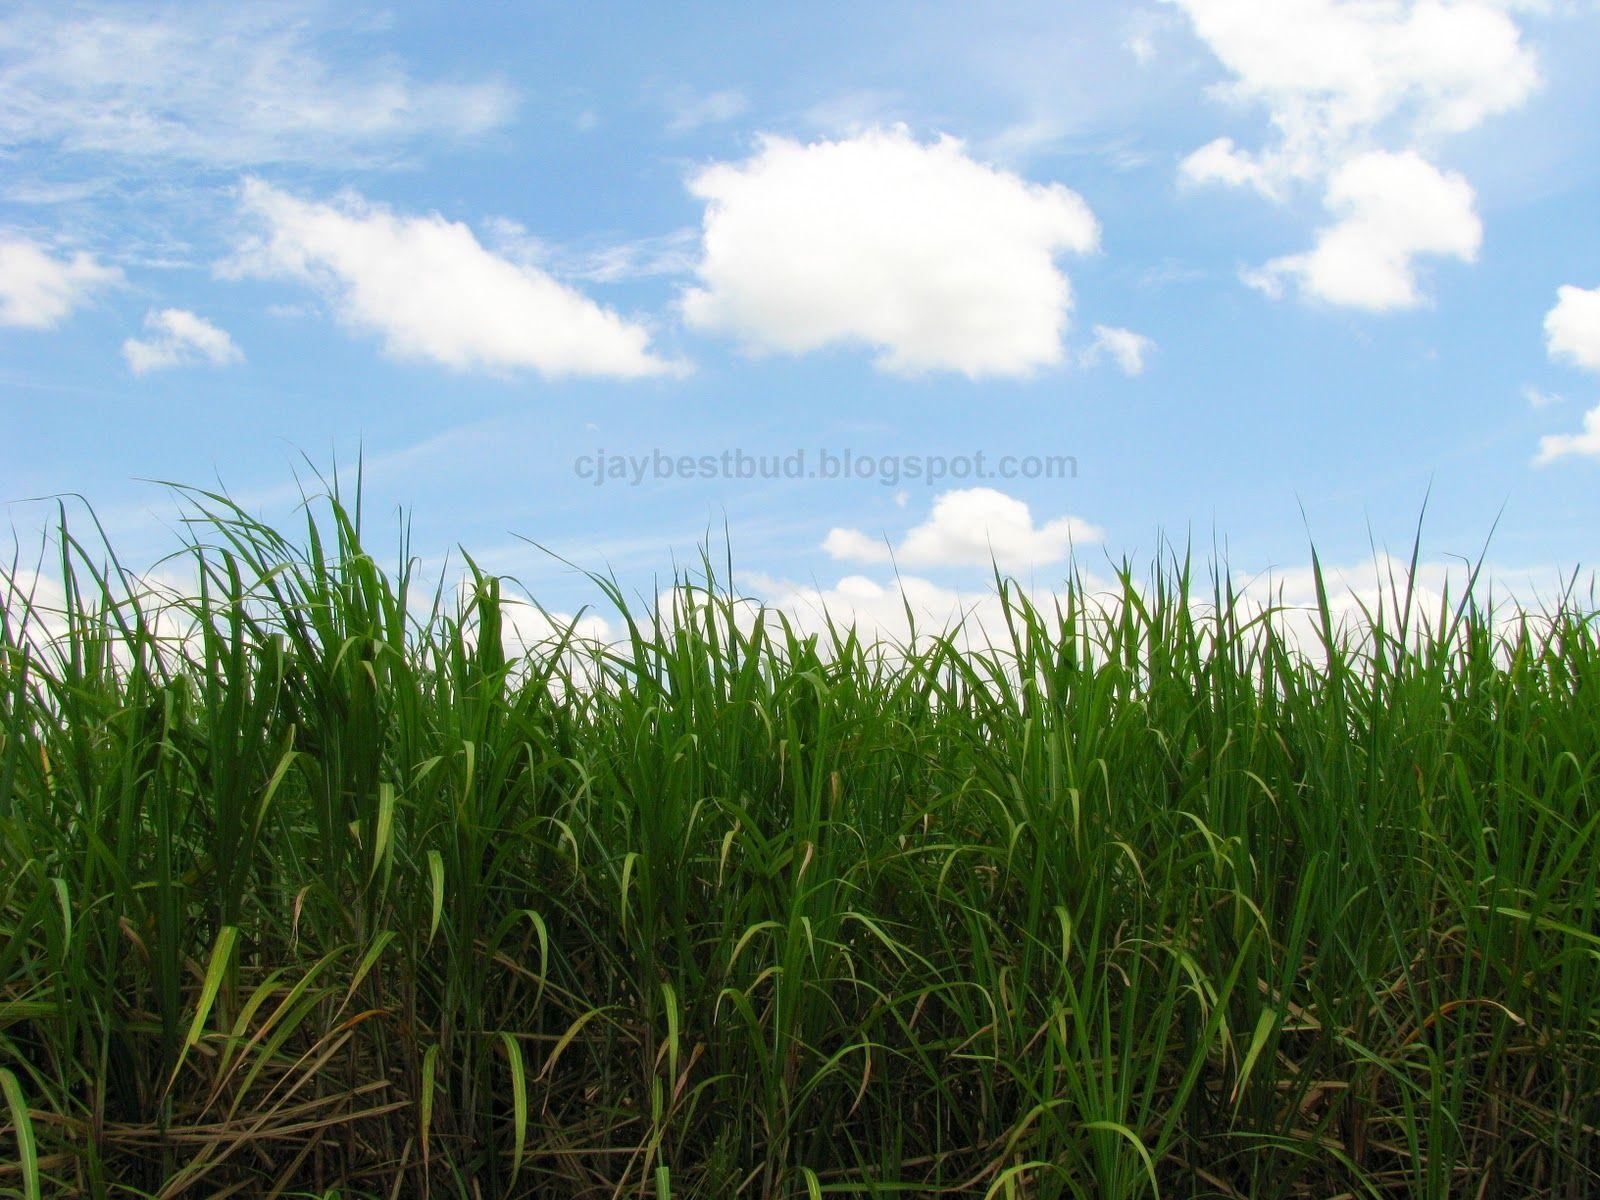 BESTBUD: Chuping Sugar Cane Plantation, Perlis Biggest Sugar